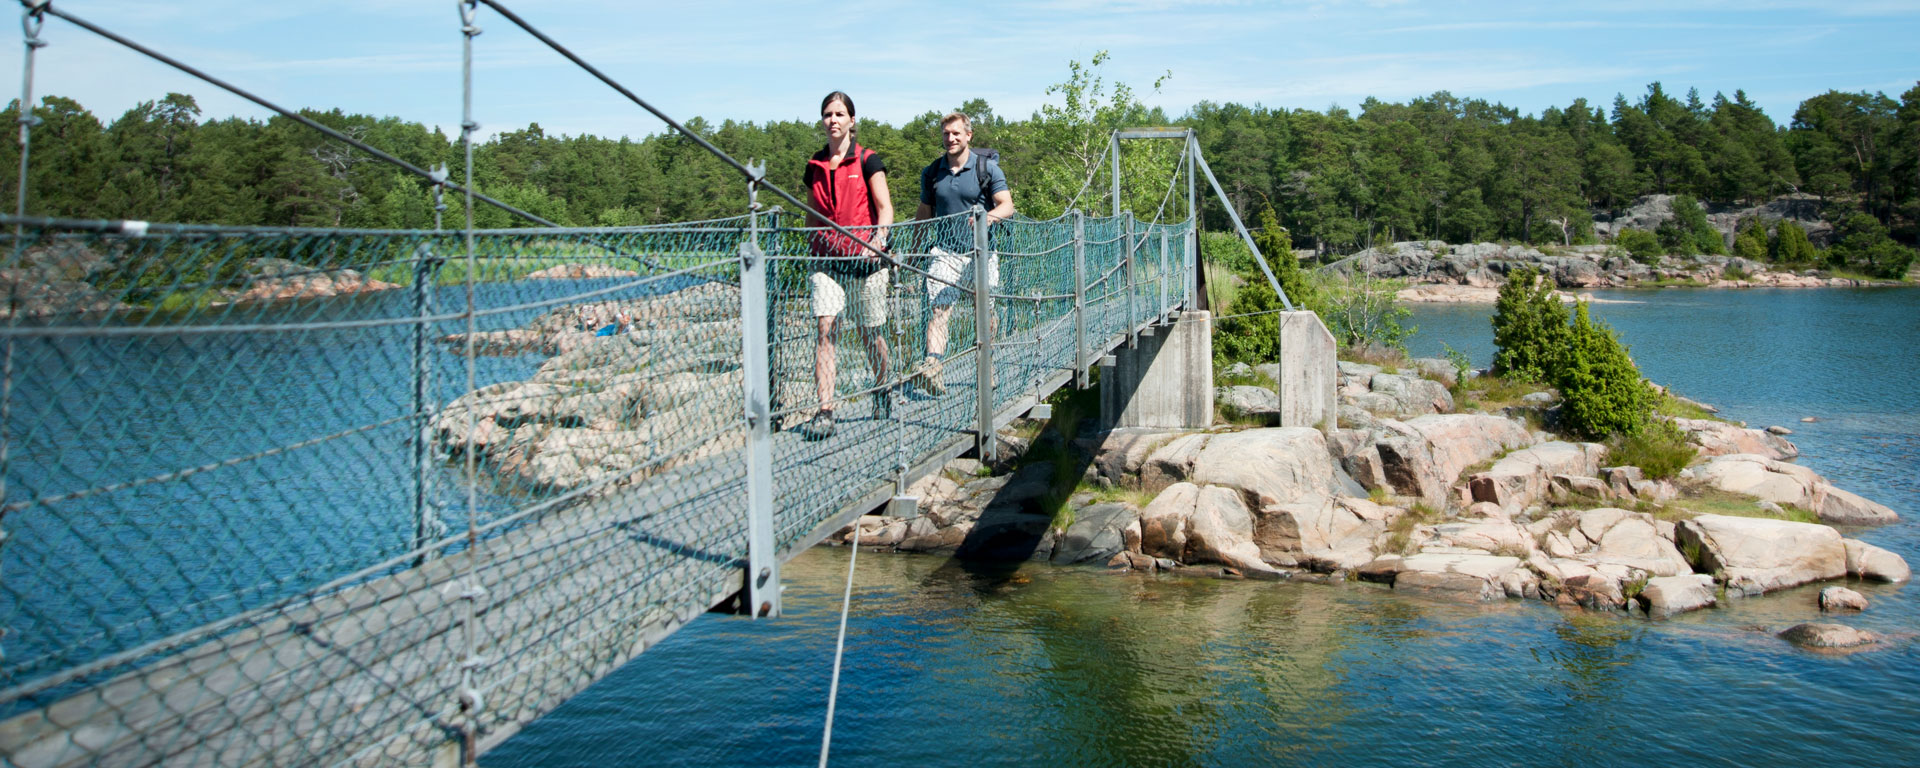 Två personer vandrar över en hängbro.